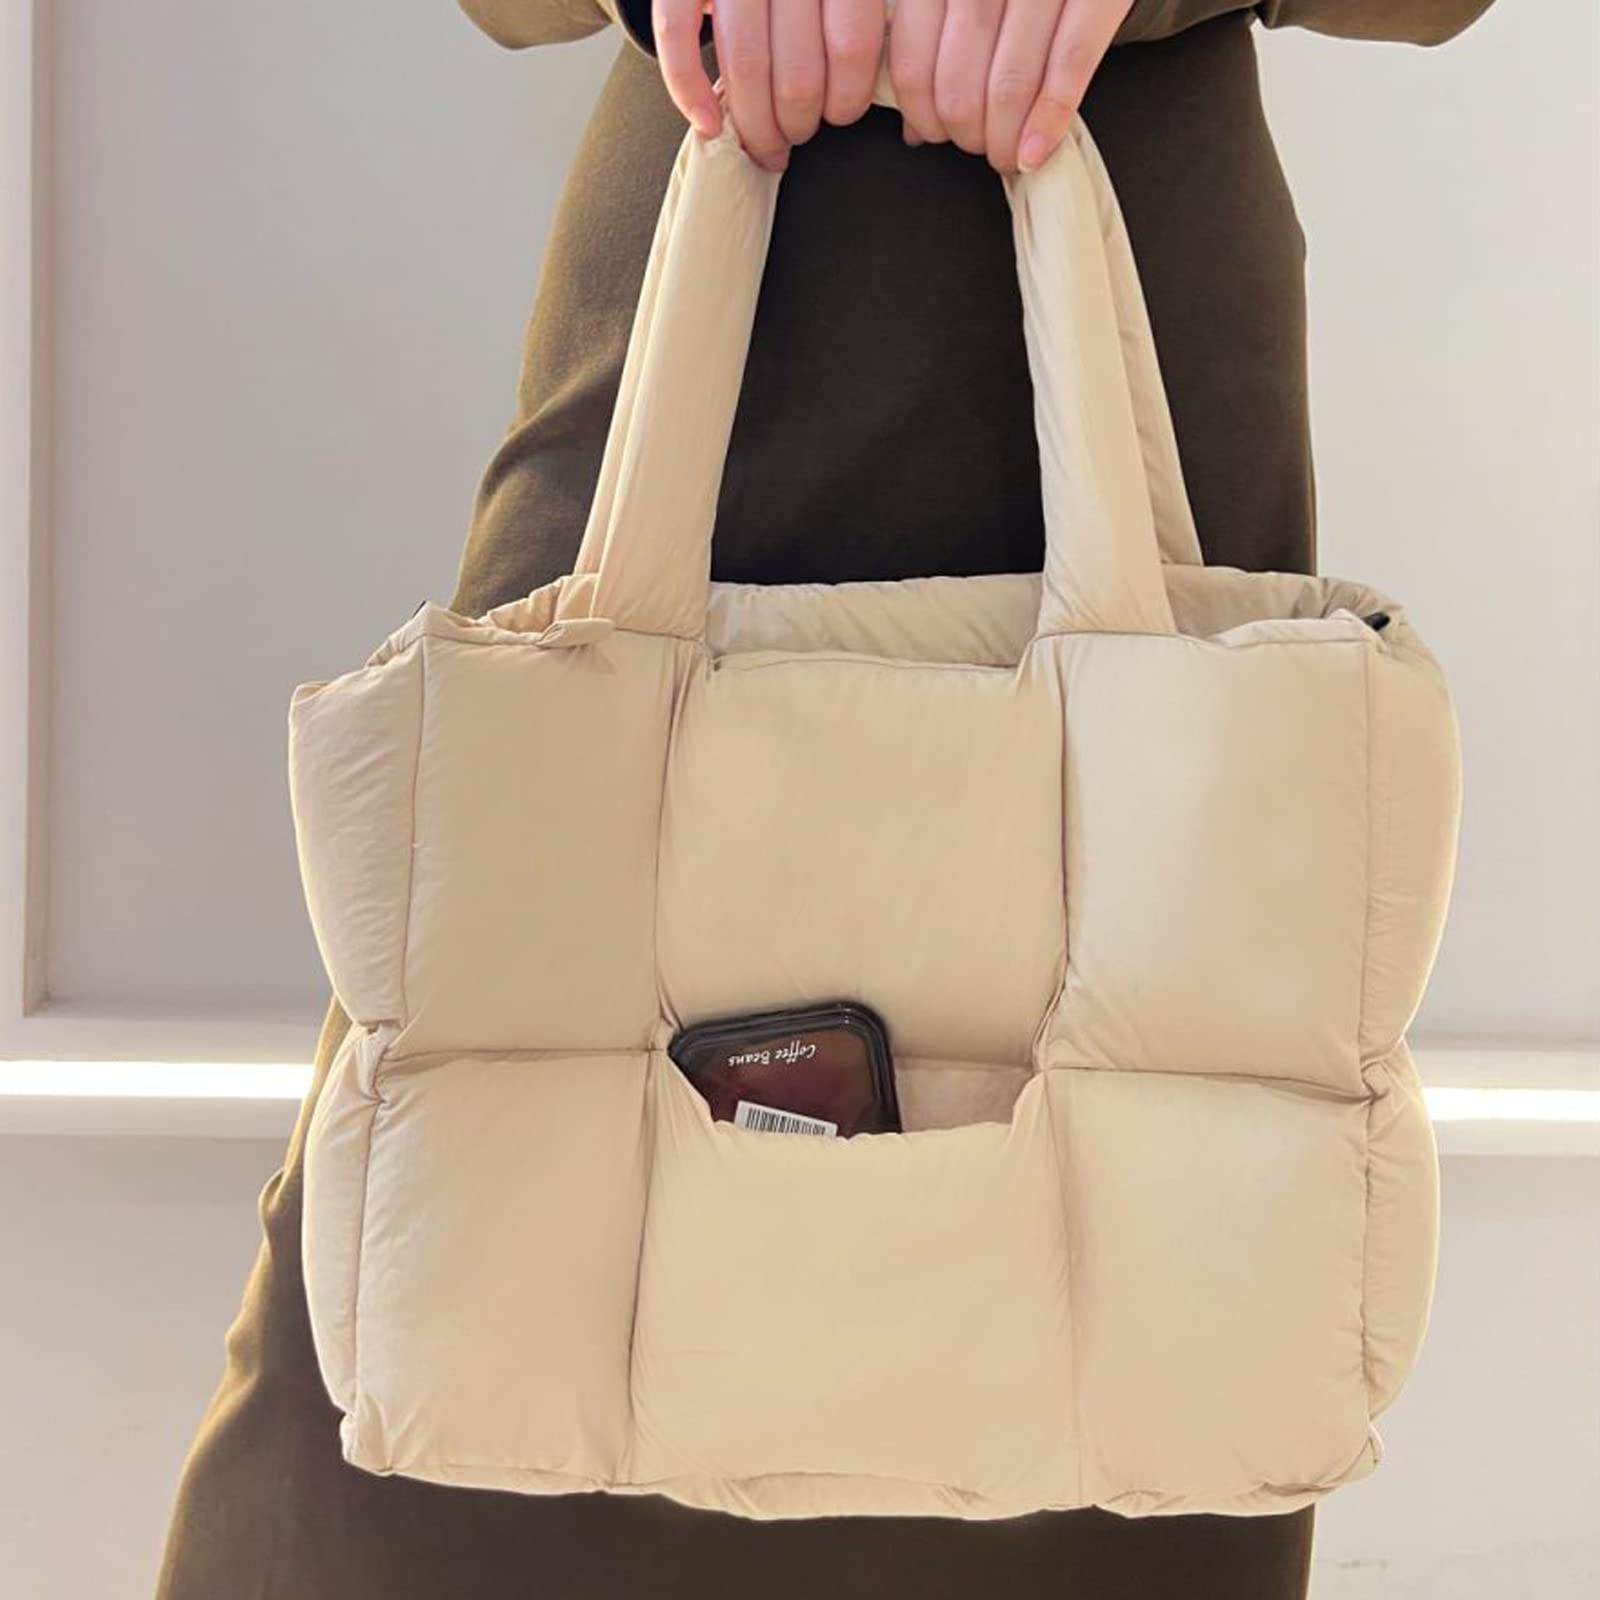 Nylon Bag Woven Shoulder Handbag Product Details